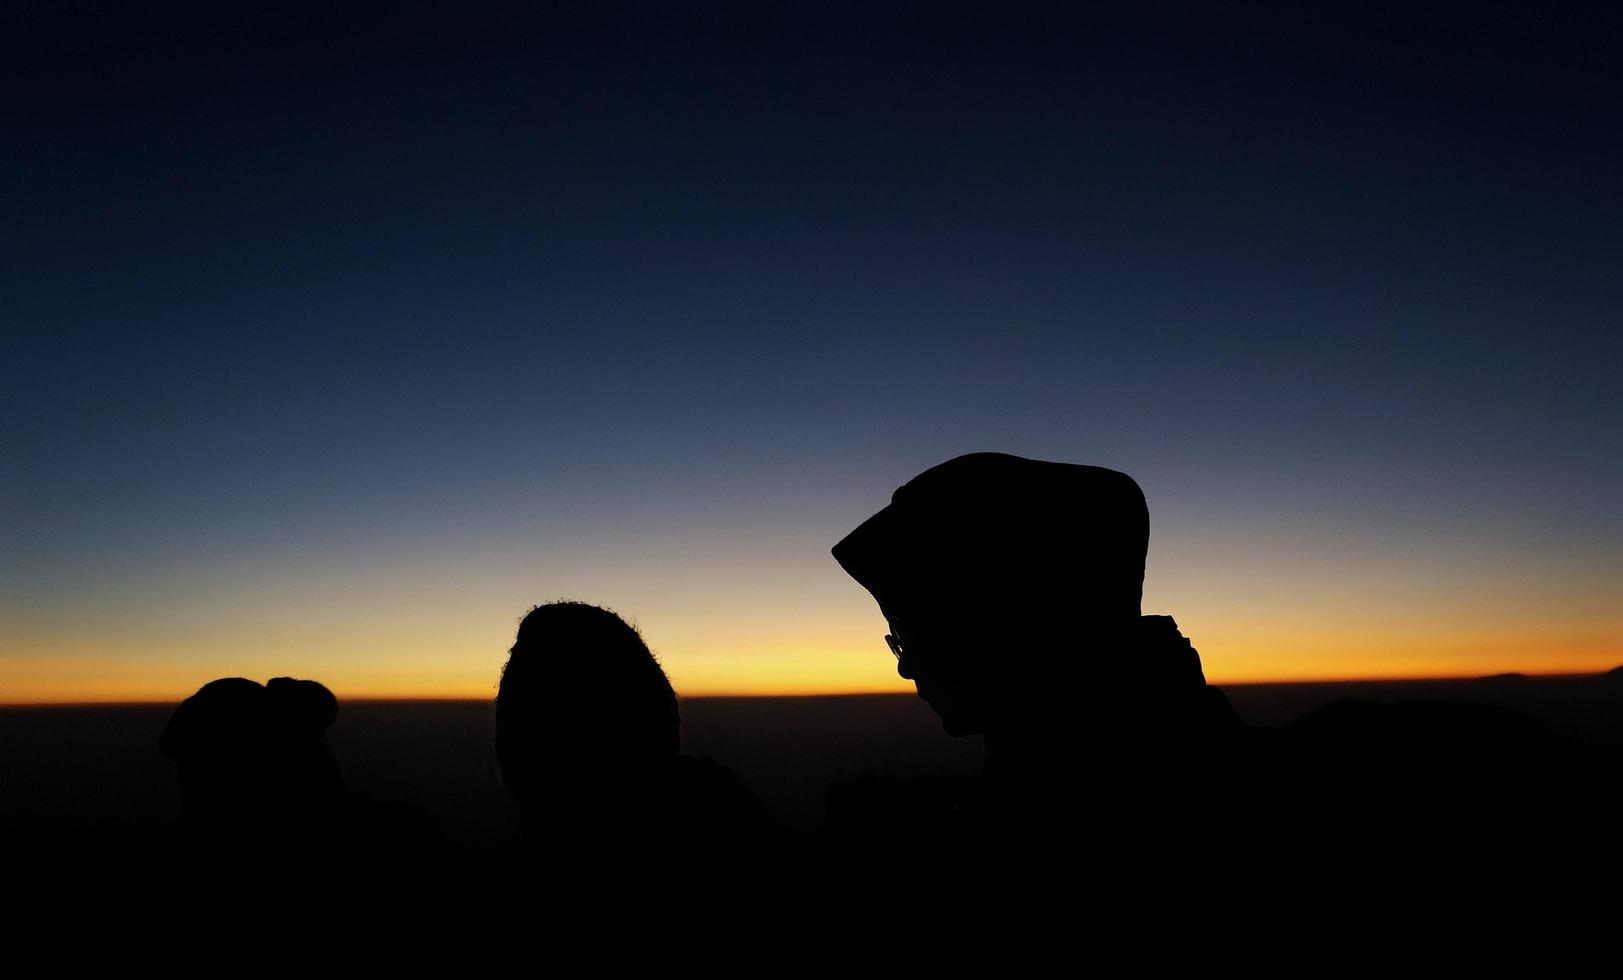 wonosobo, indonesien 31 augusti 2019. prau mount, den vackra silhuetten av soluppgången och utsikten över berget, människor på morgonen foto